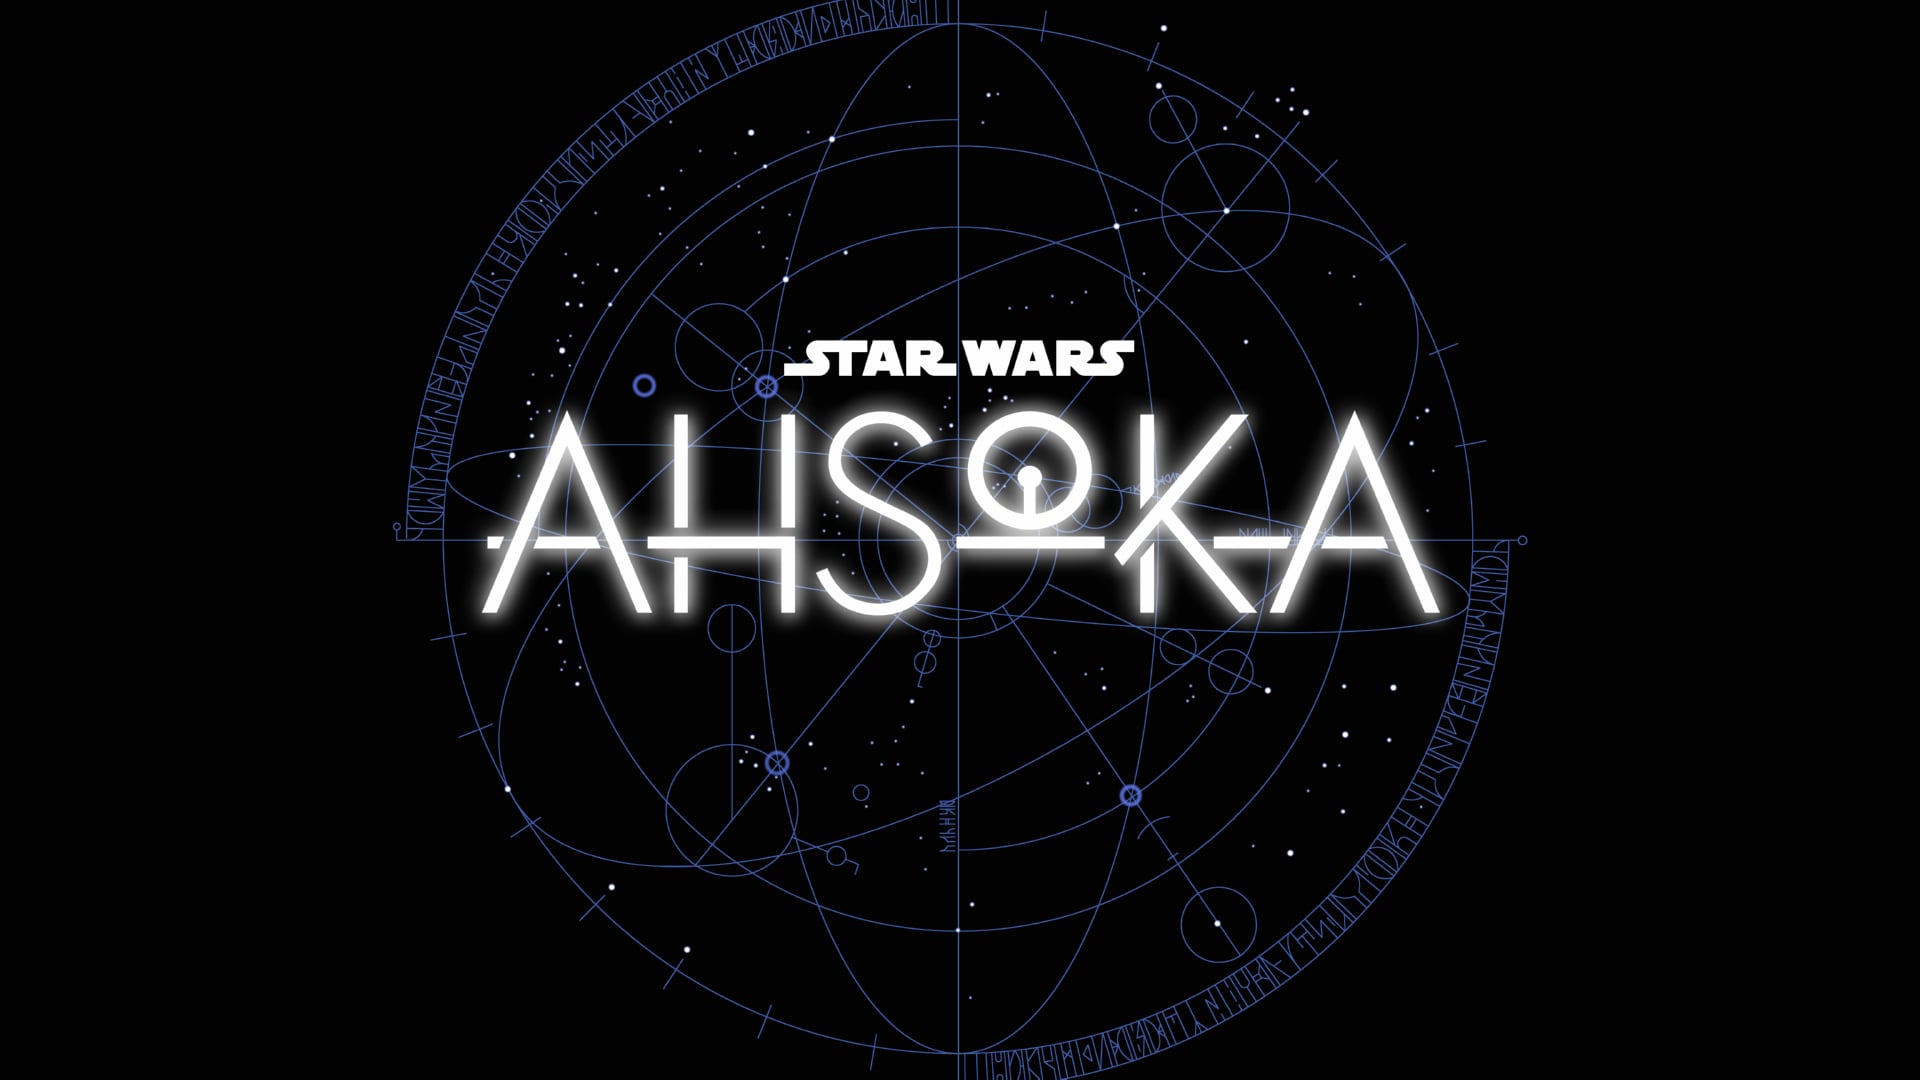 Digital Art Star Wars Ahsoka at 640 x 960 iPhone 4 size wallpapers HD quality